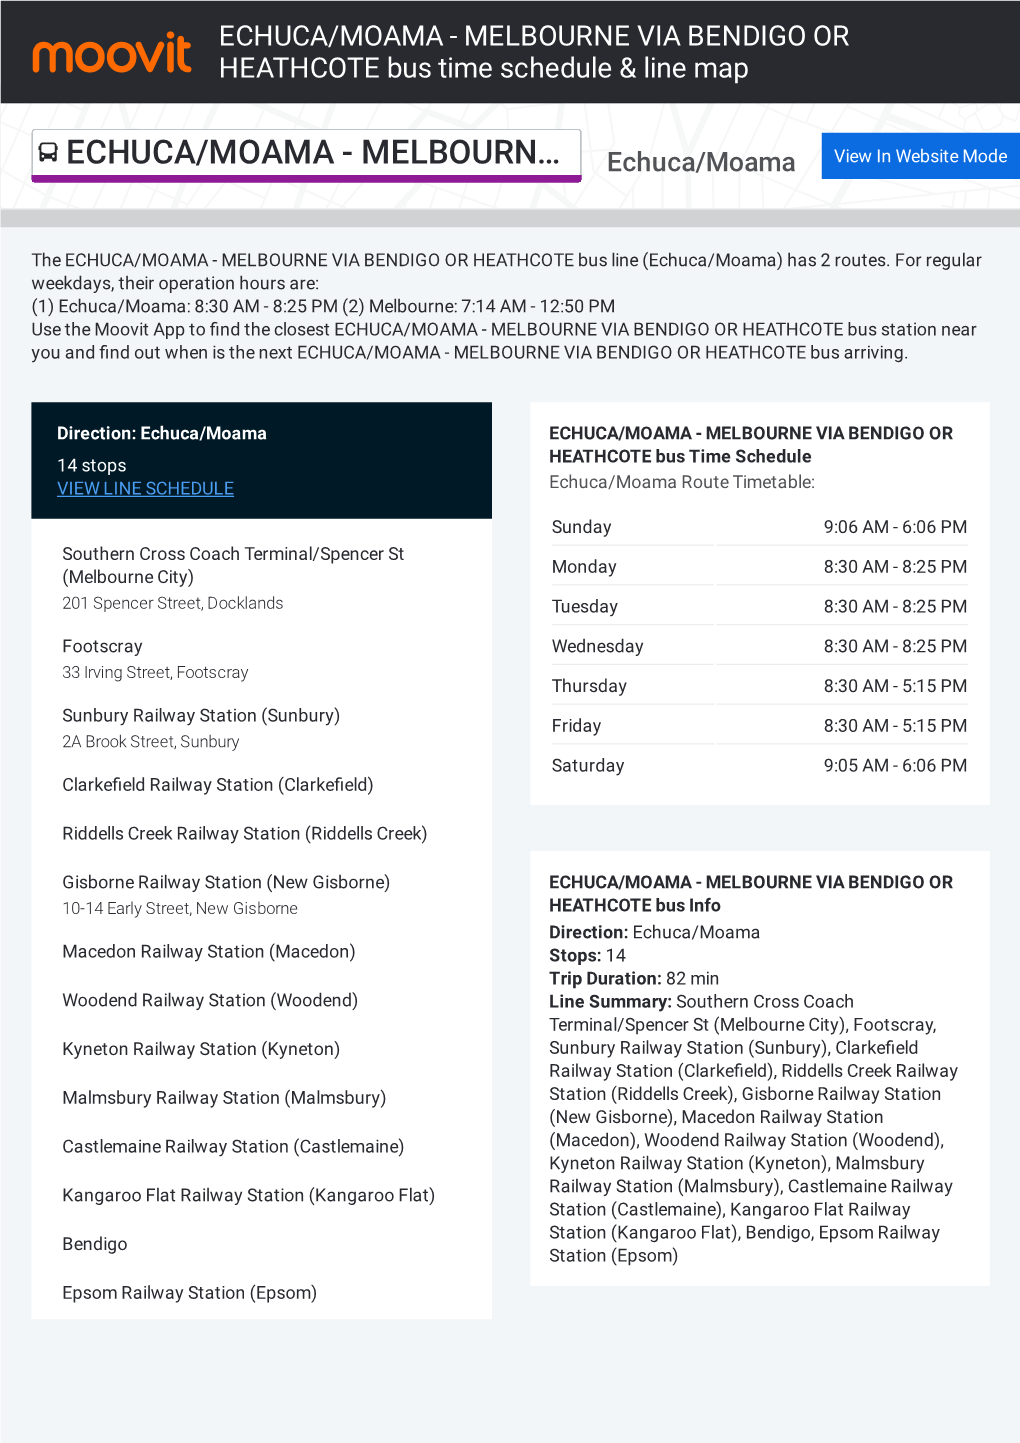 ECHUCA/MOAMA - MELBOURNE VIA BENDIGO OR HEATHCOTE Bus Time Schedule & Line Map